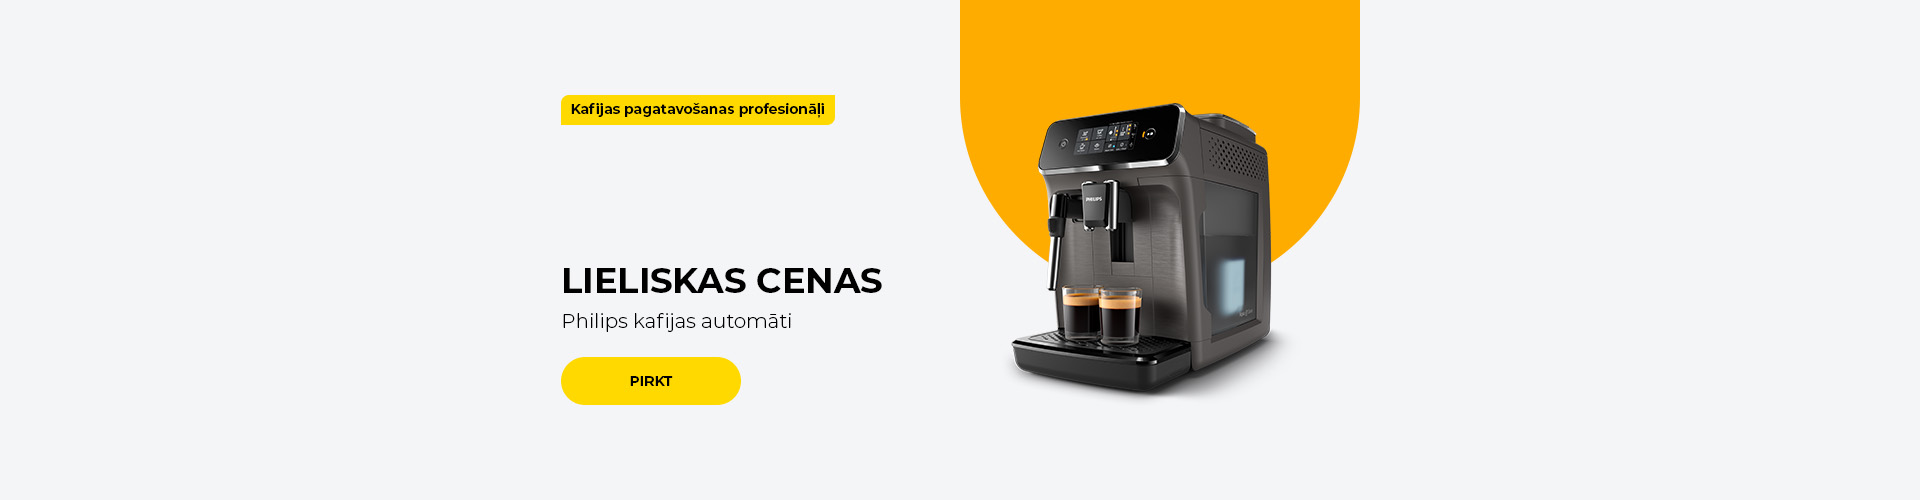 LIELISKAS CENAS Philips kafijas automāti